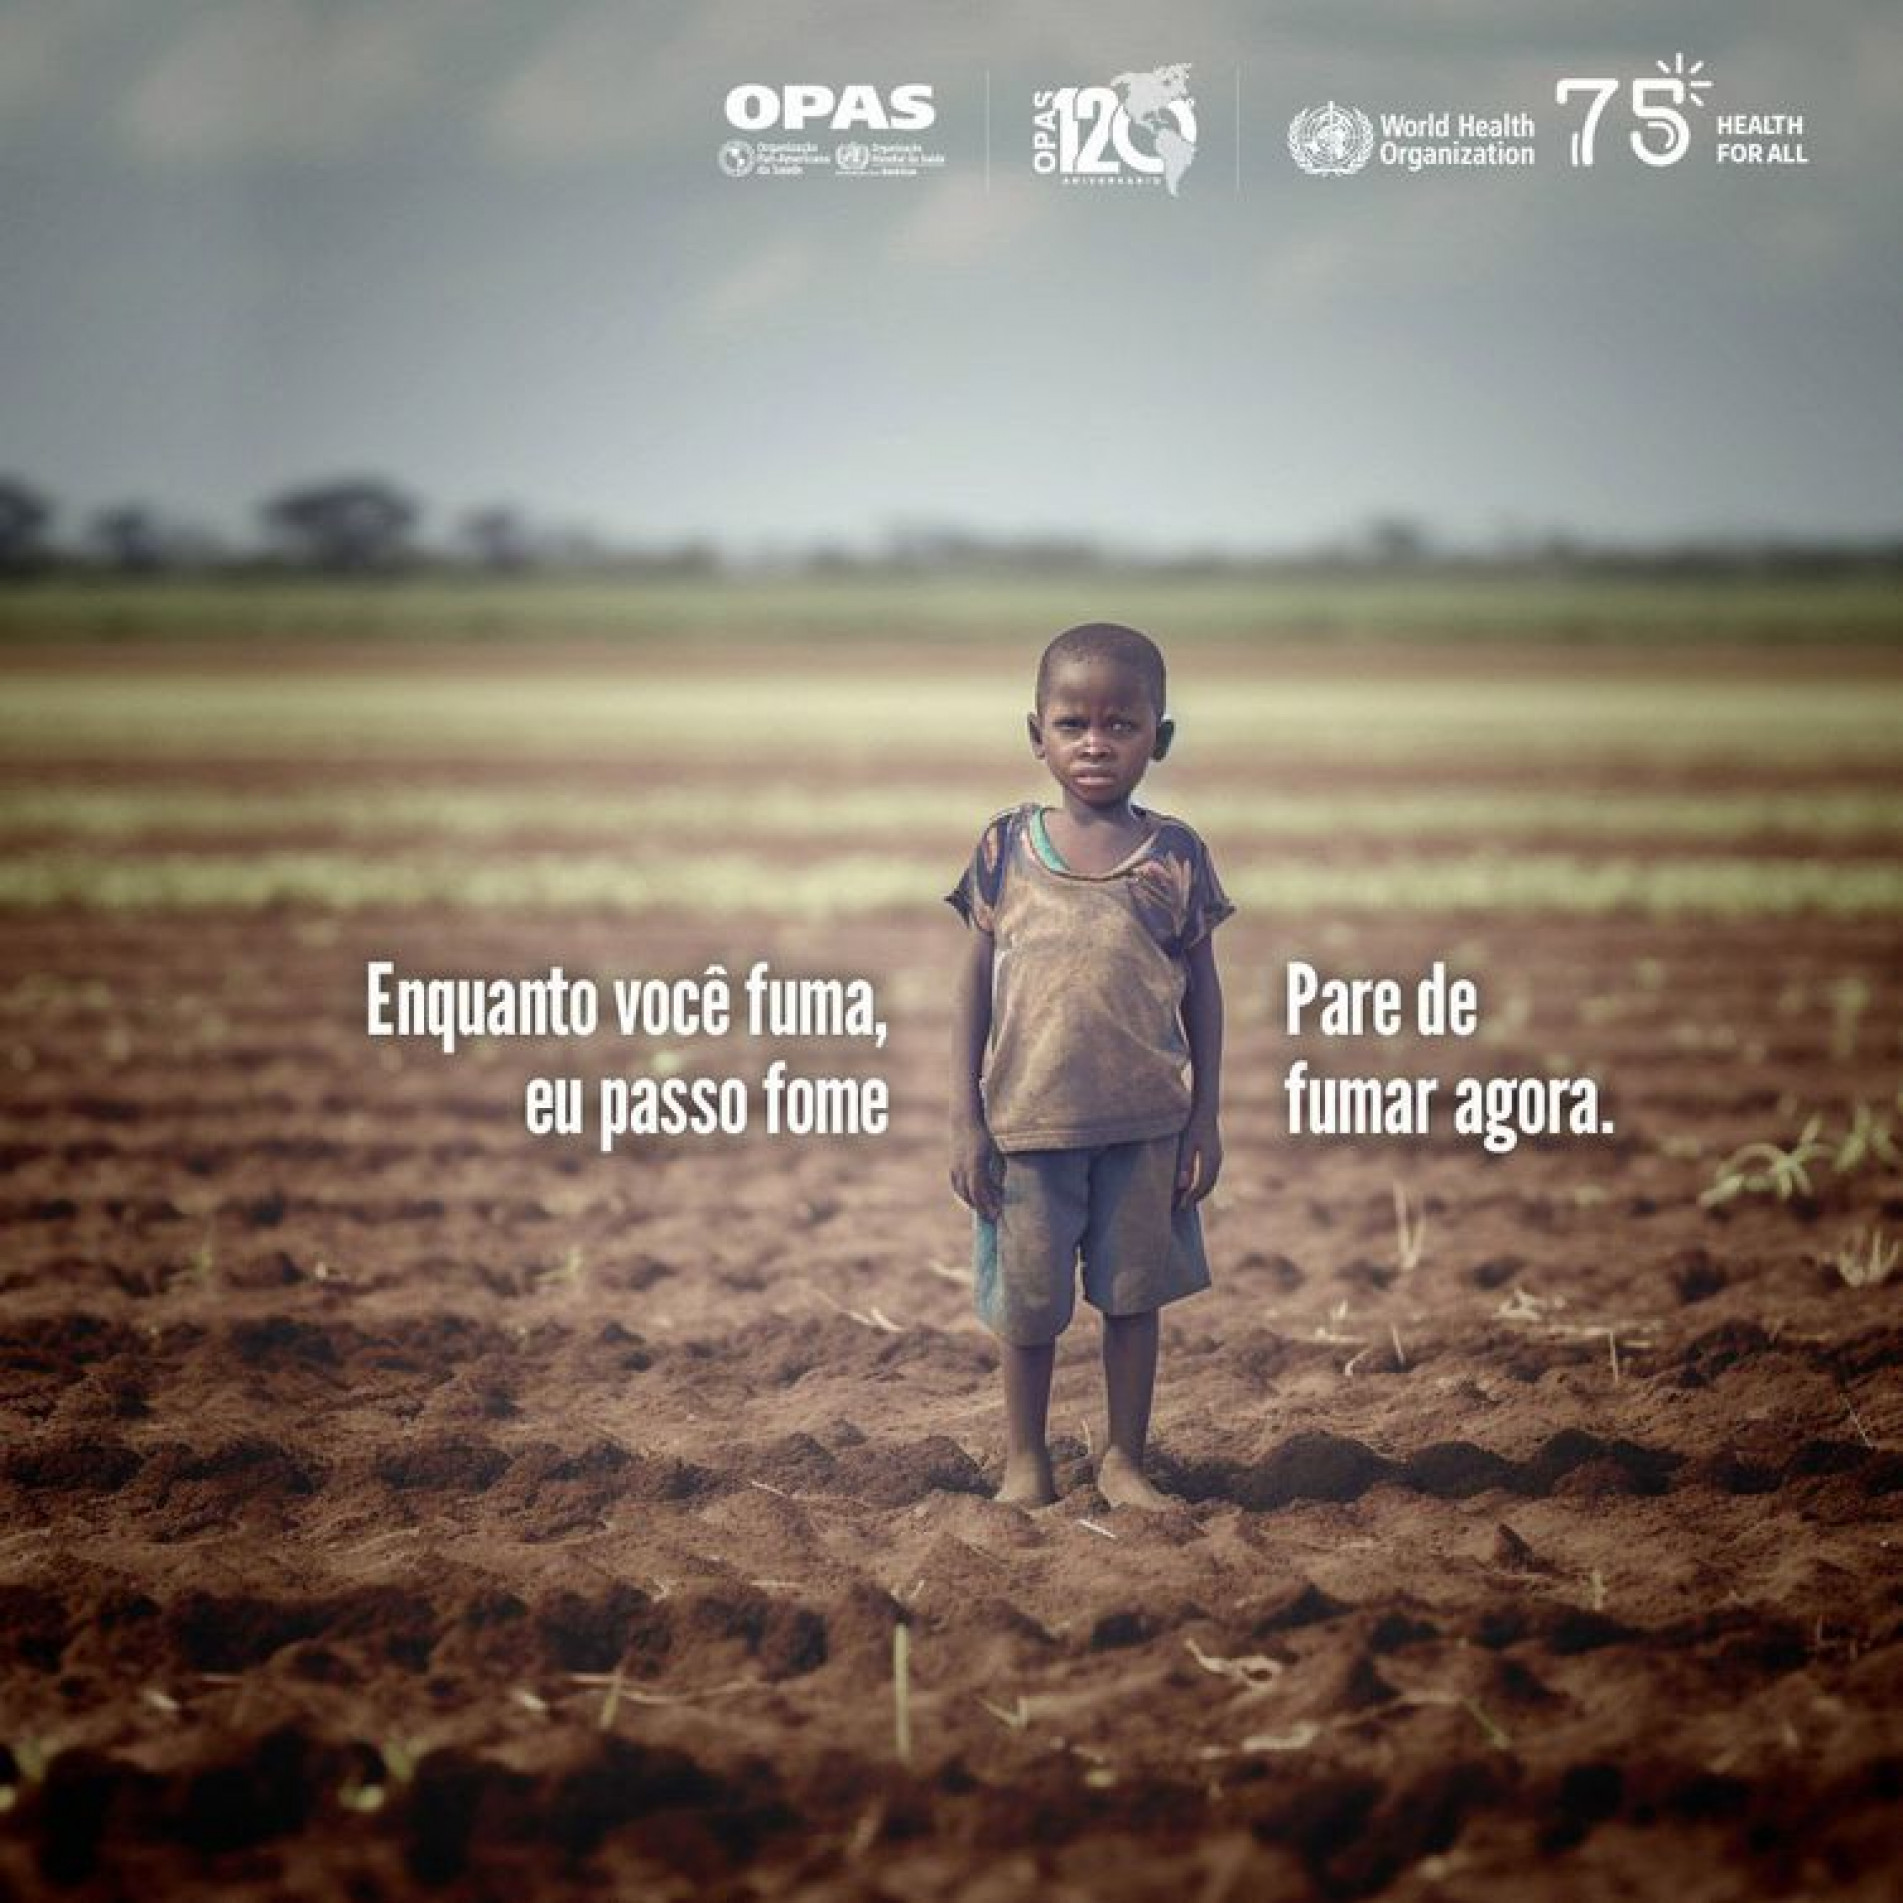 Imagem da campanha contra o fumo da Organização Pan-Americana de Saúde (OPAS)